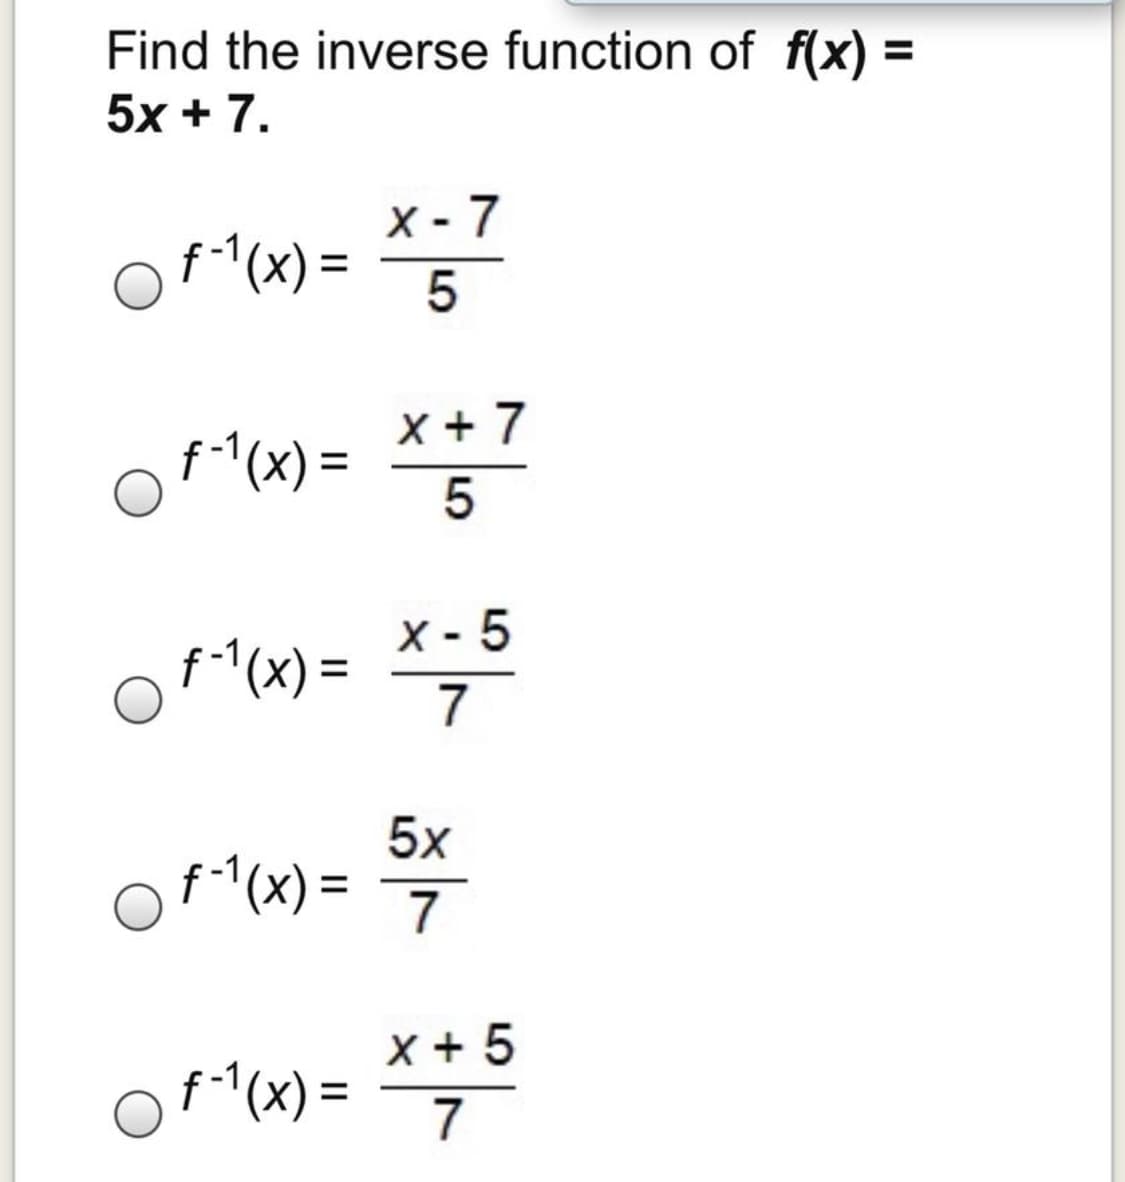 Find the inverse function of f(x) =
5x + 7.
X - 7
of "(x)=
f-1(x)
%3D
5
x + 7
f-(x) =
%3D
X -
of "(x) = *;5
7
5x
of (x) = 7
%3D
x + 5
f^(x) =
7
